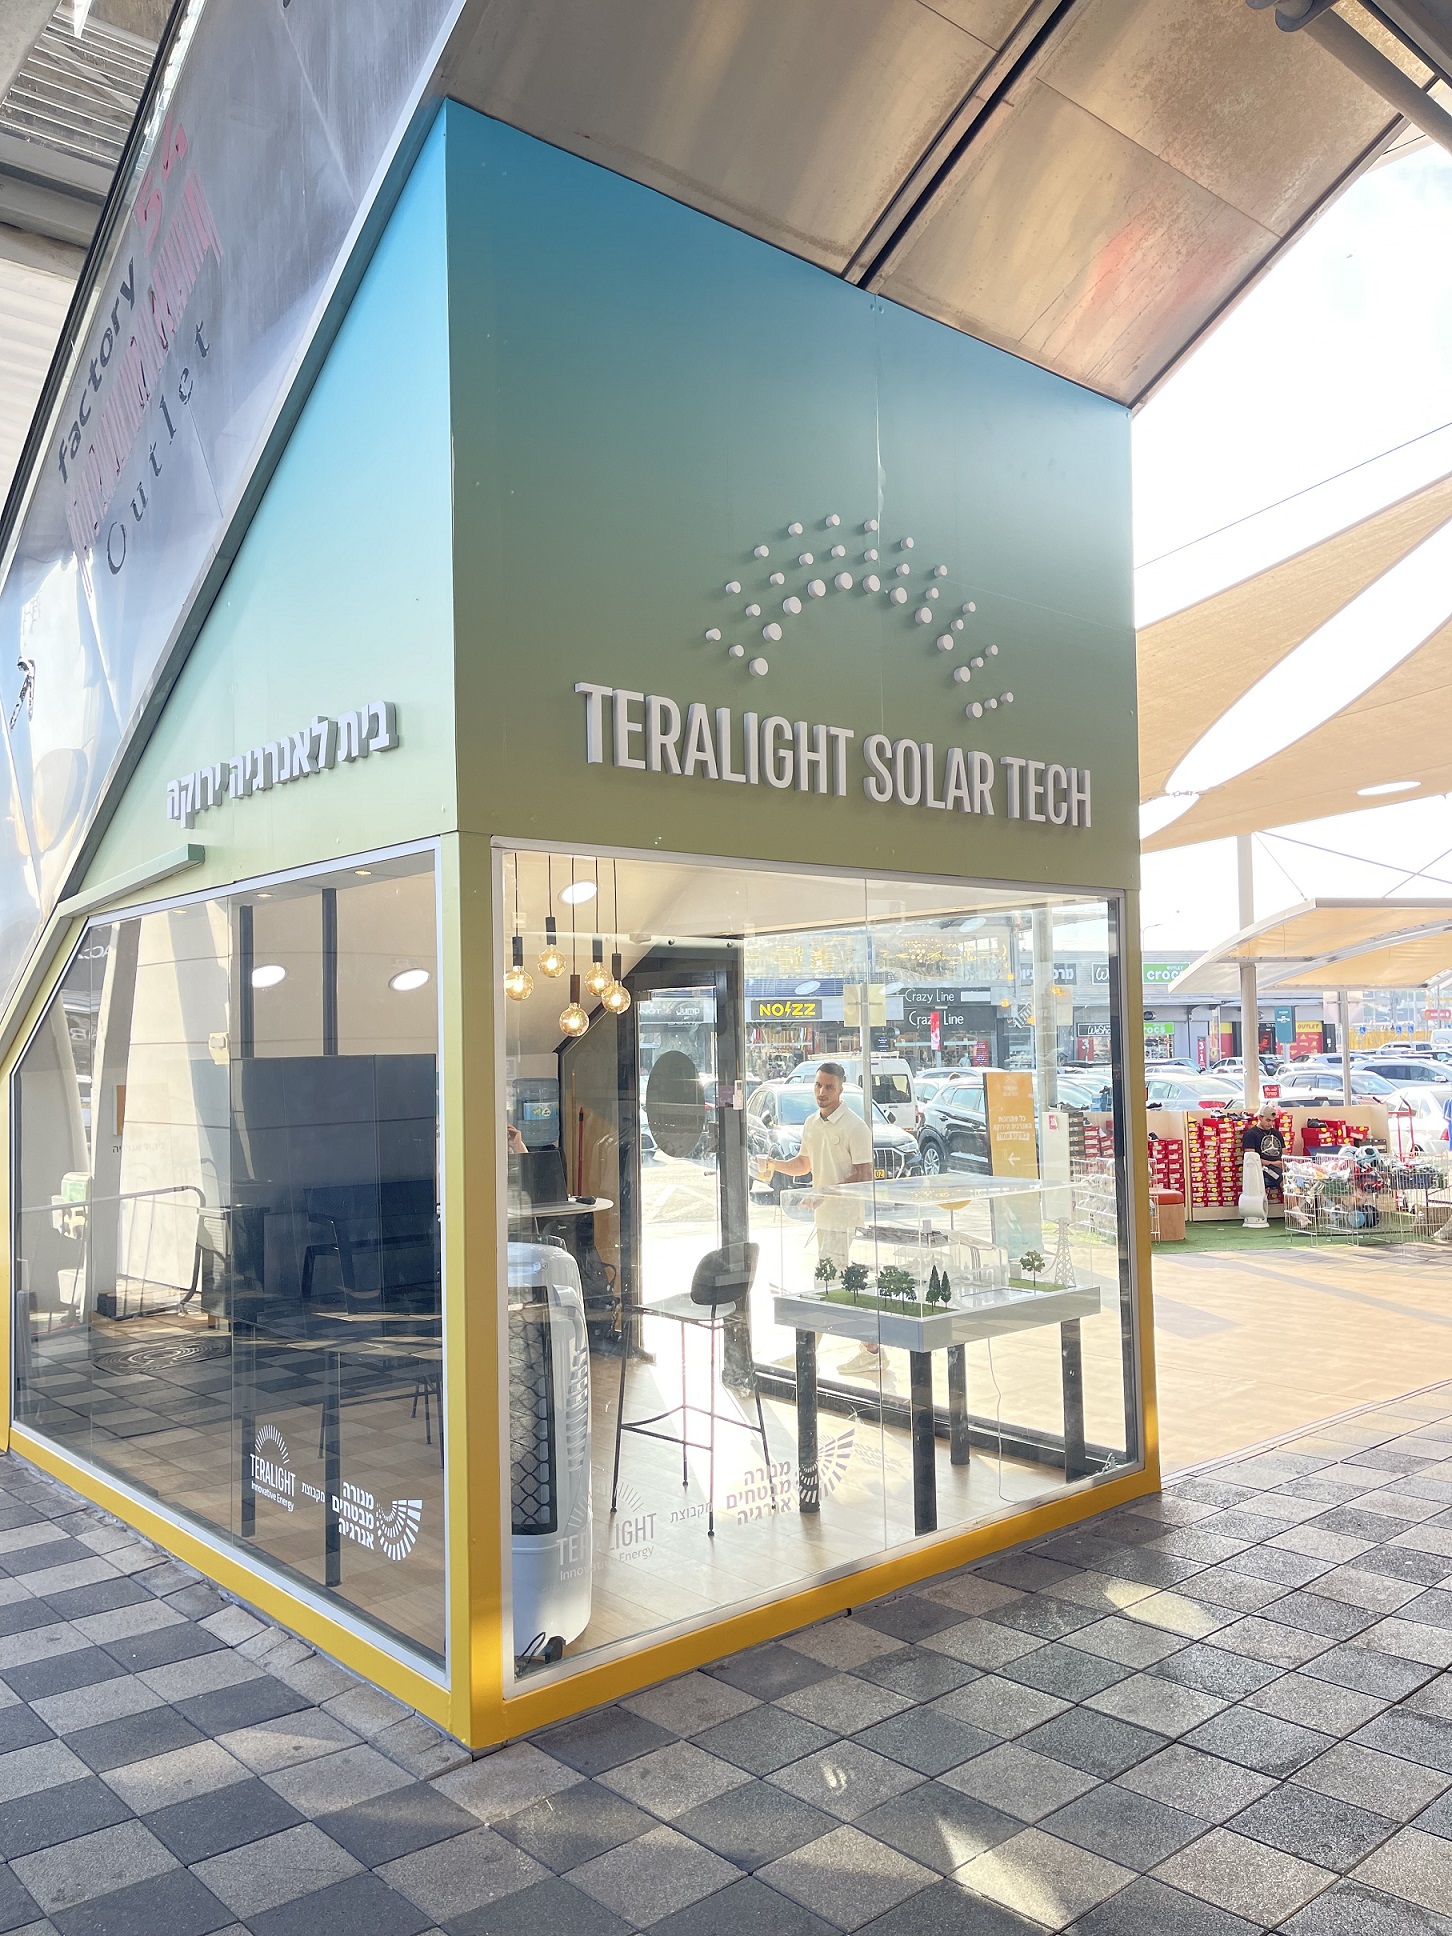 לראשונה בישראל תיפתח חנות פופ אפ ירוקה במתחם הקניות עופר בילו סנטר תחת השם: "TERALIGHT SOLAR TECH"